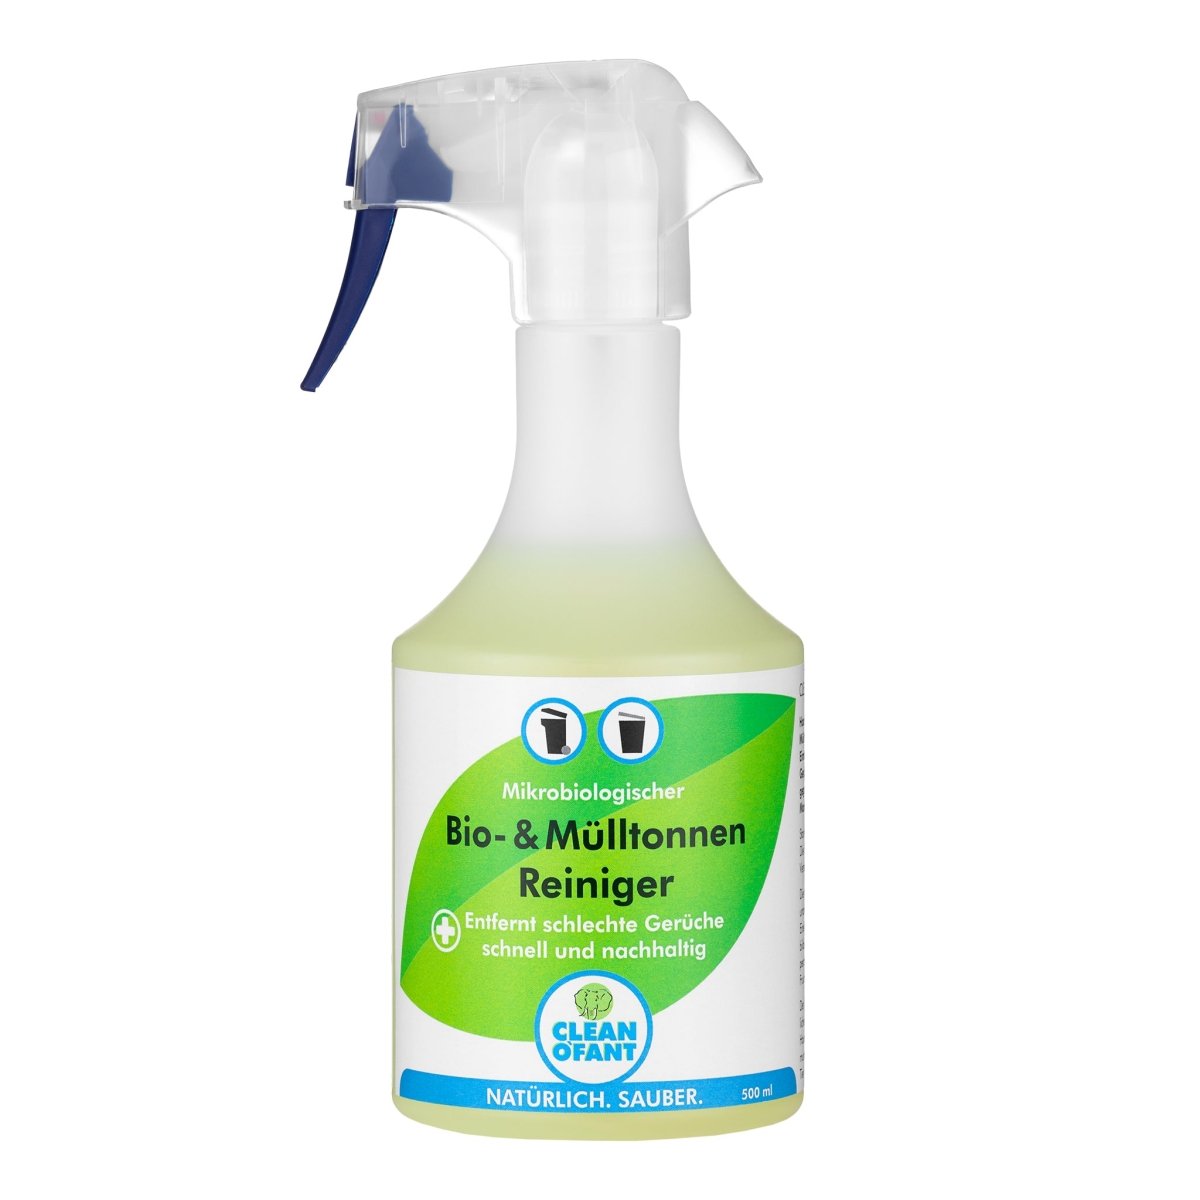 Bio- & Mülltonnen-Reiniger - mikrobiologisch - 500 ml + Reinigungs-Bürste Universal - CLEANOFANT